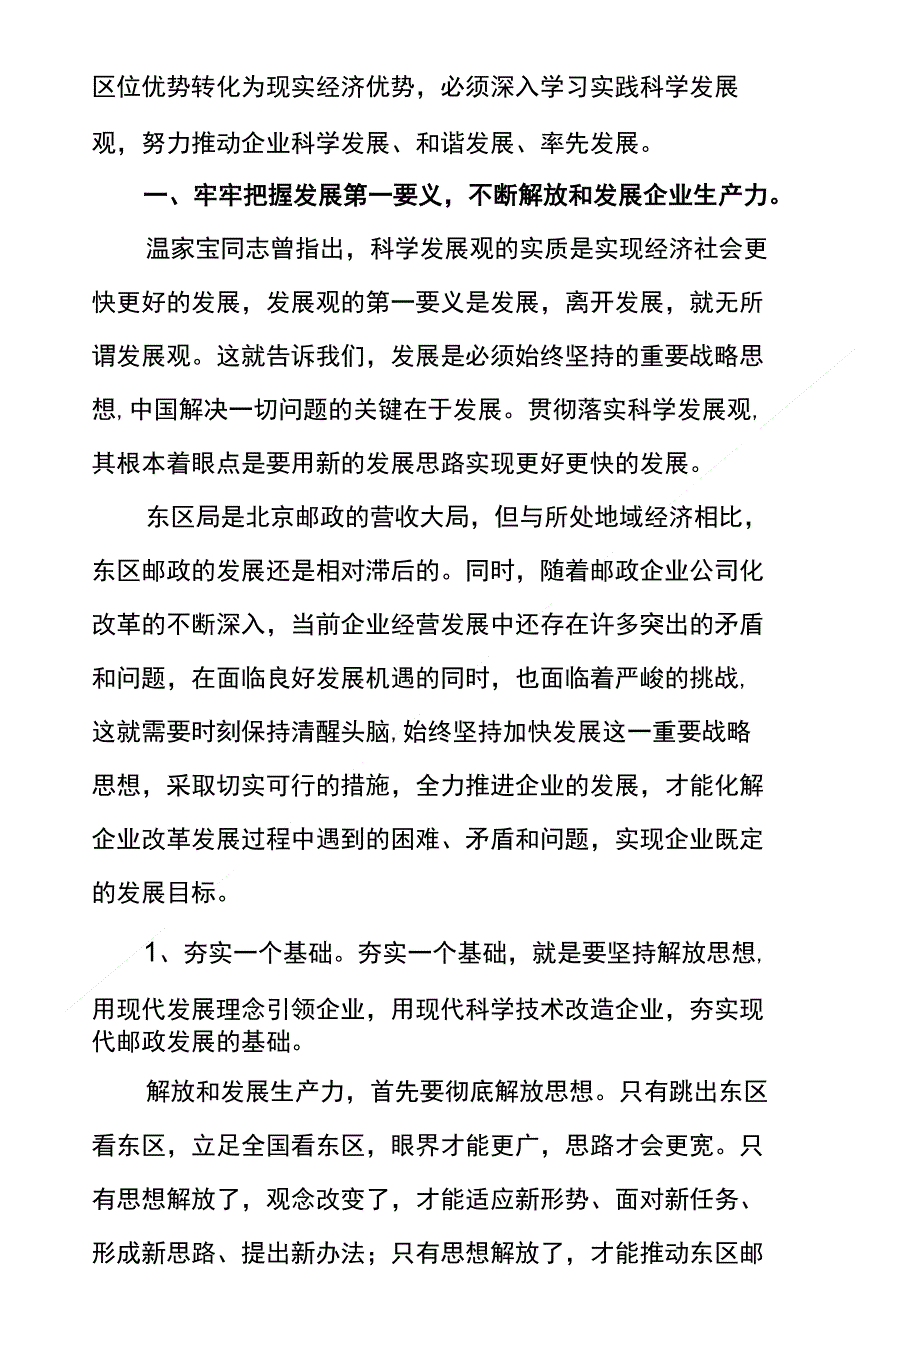 深入学习实践科学发展观 - 北京邮政党建网_第2页